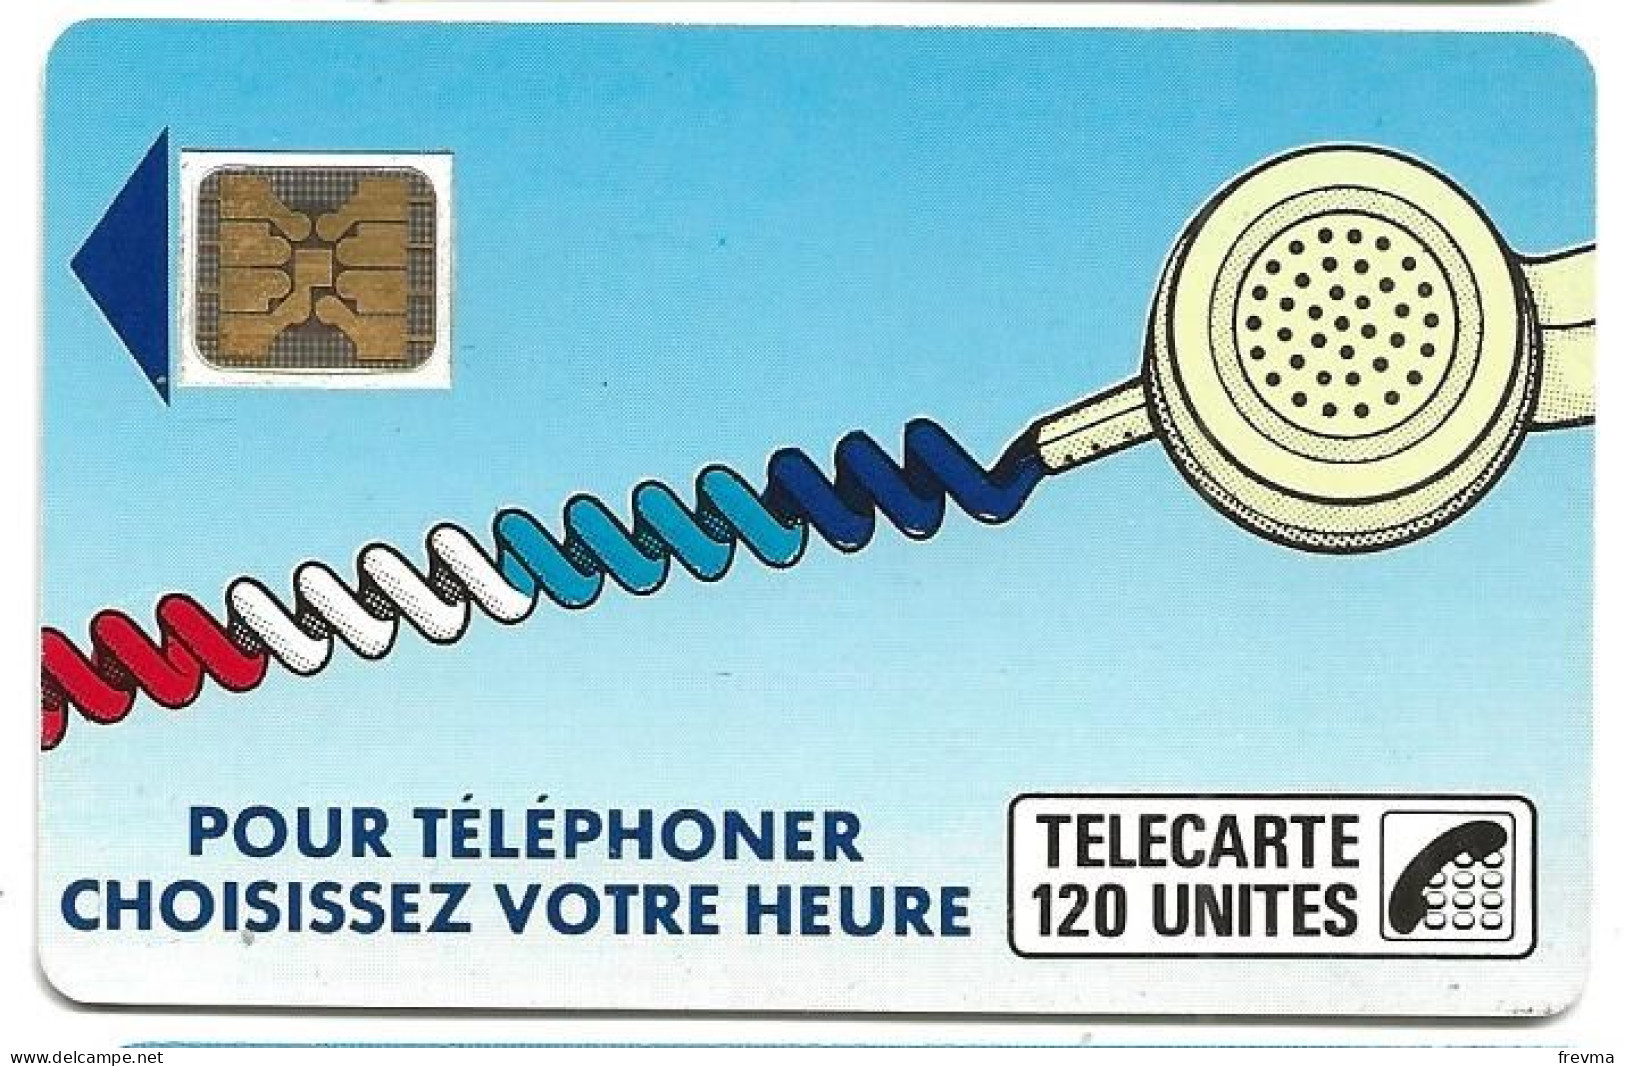 Telecarte K 10A 120 Unités SC4on - Telefonschnur (Cordon)